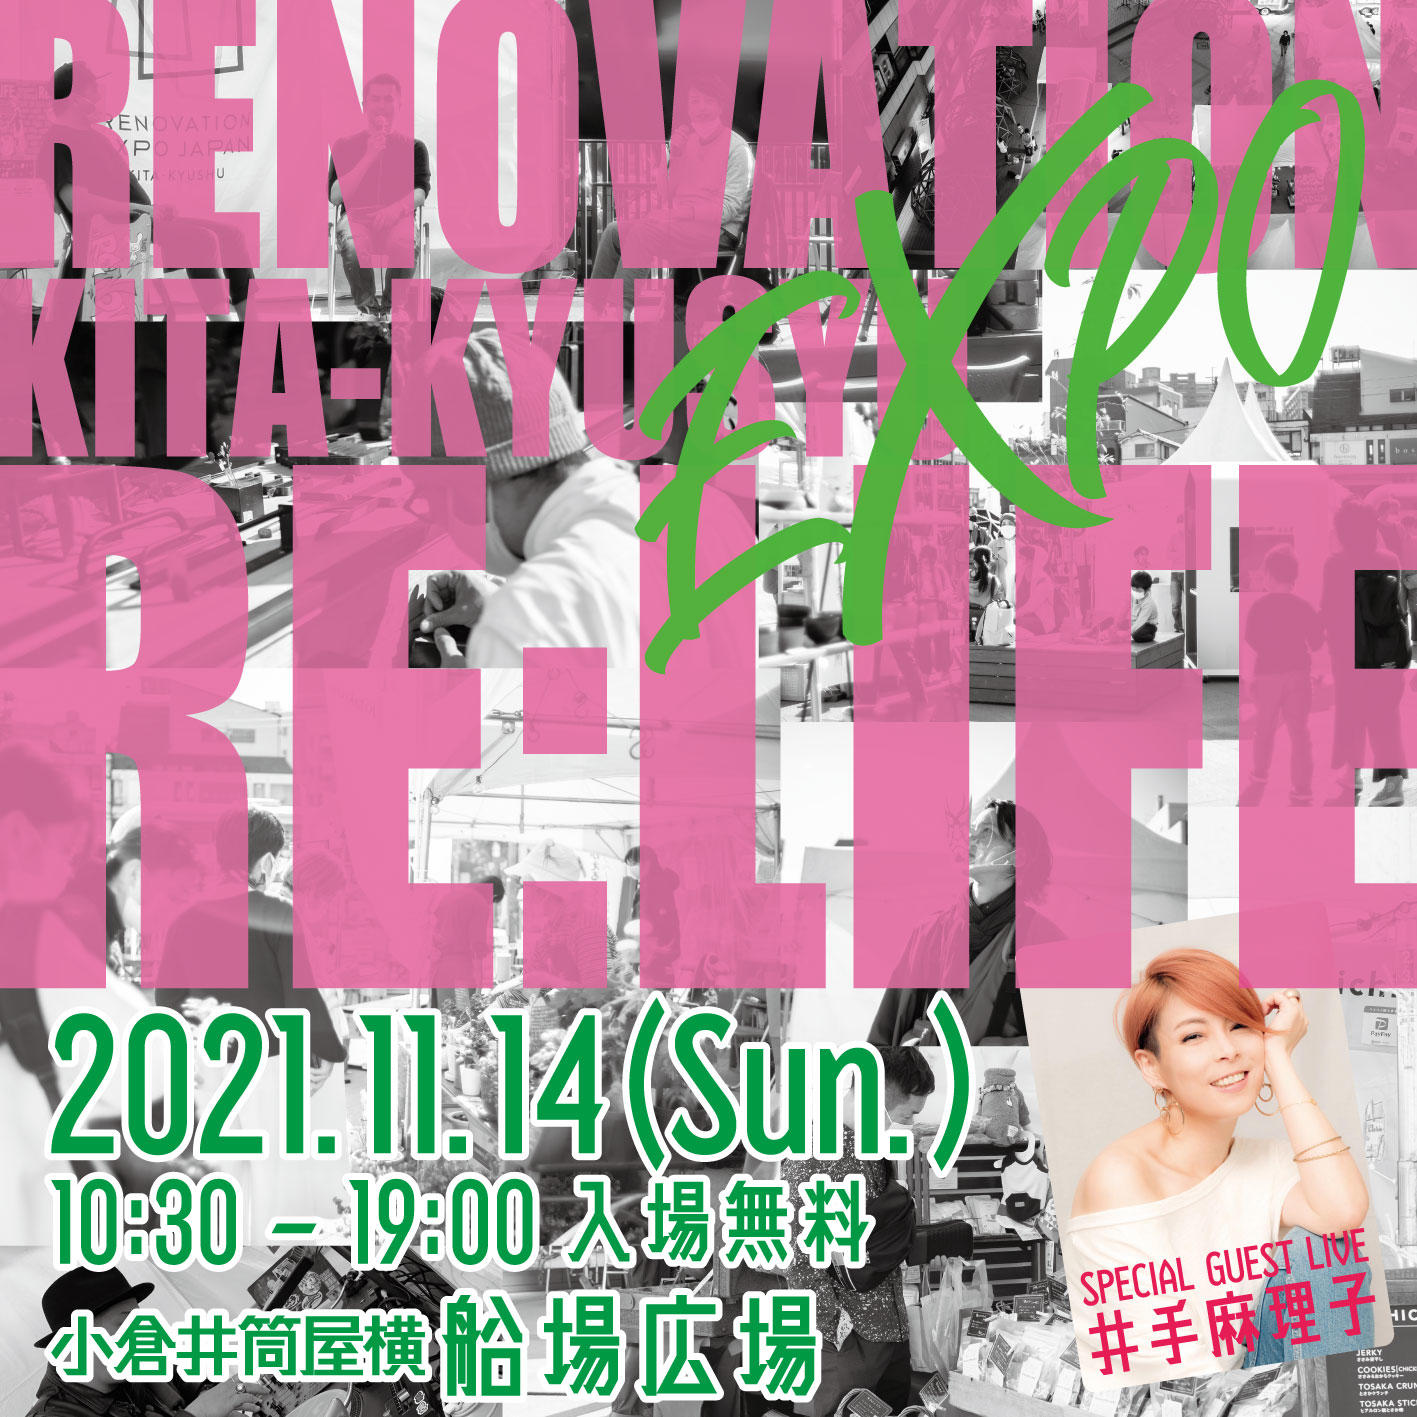 【九州エリア】RENOVATION EXPO 「RE:LIFE」 in 北九州 開催について